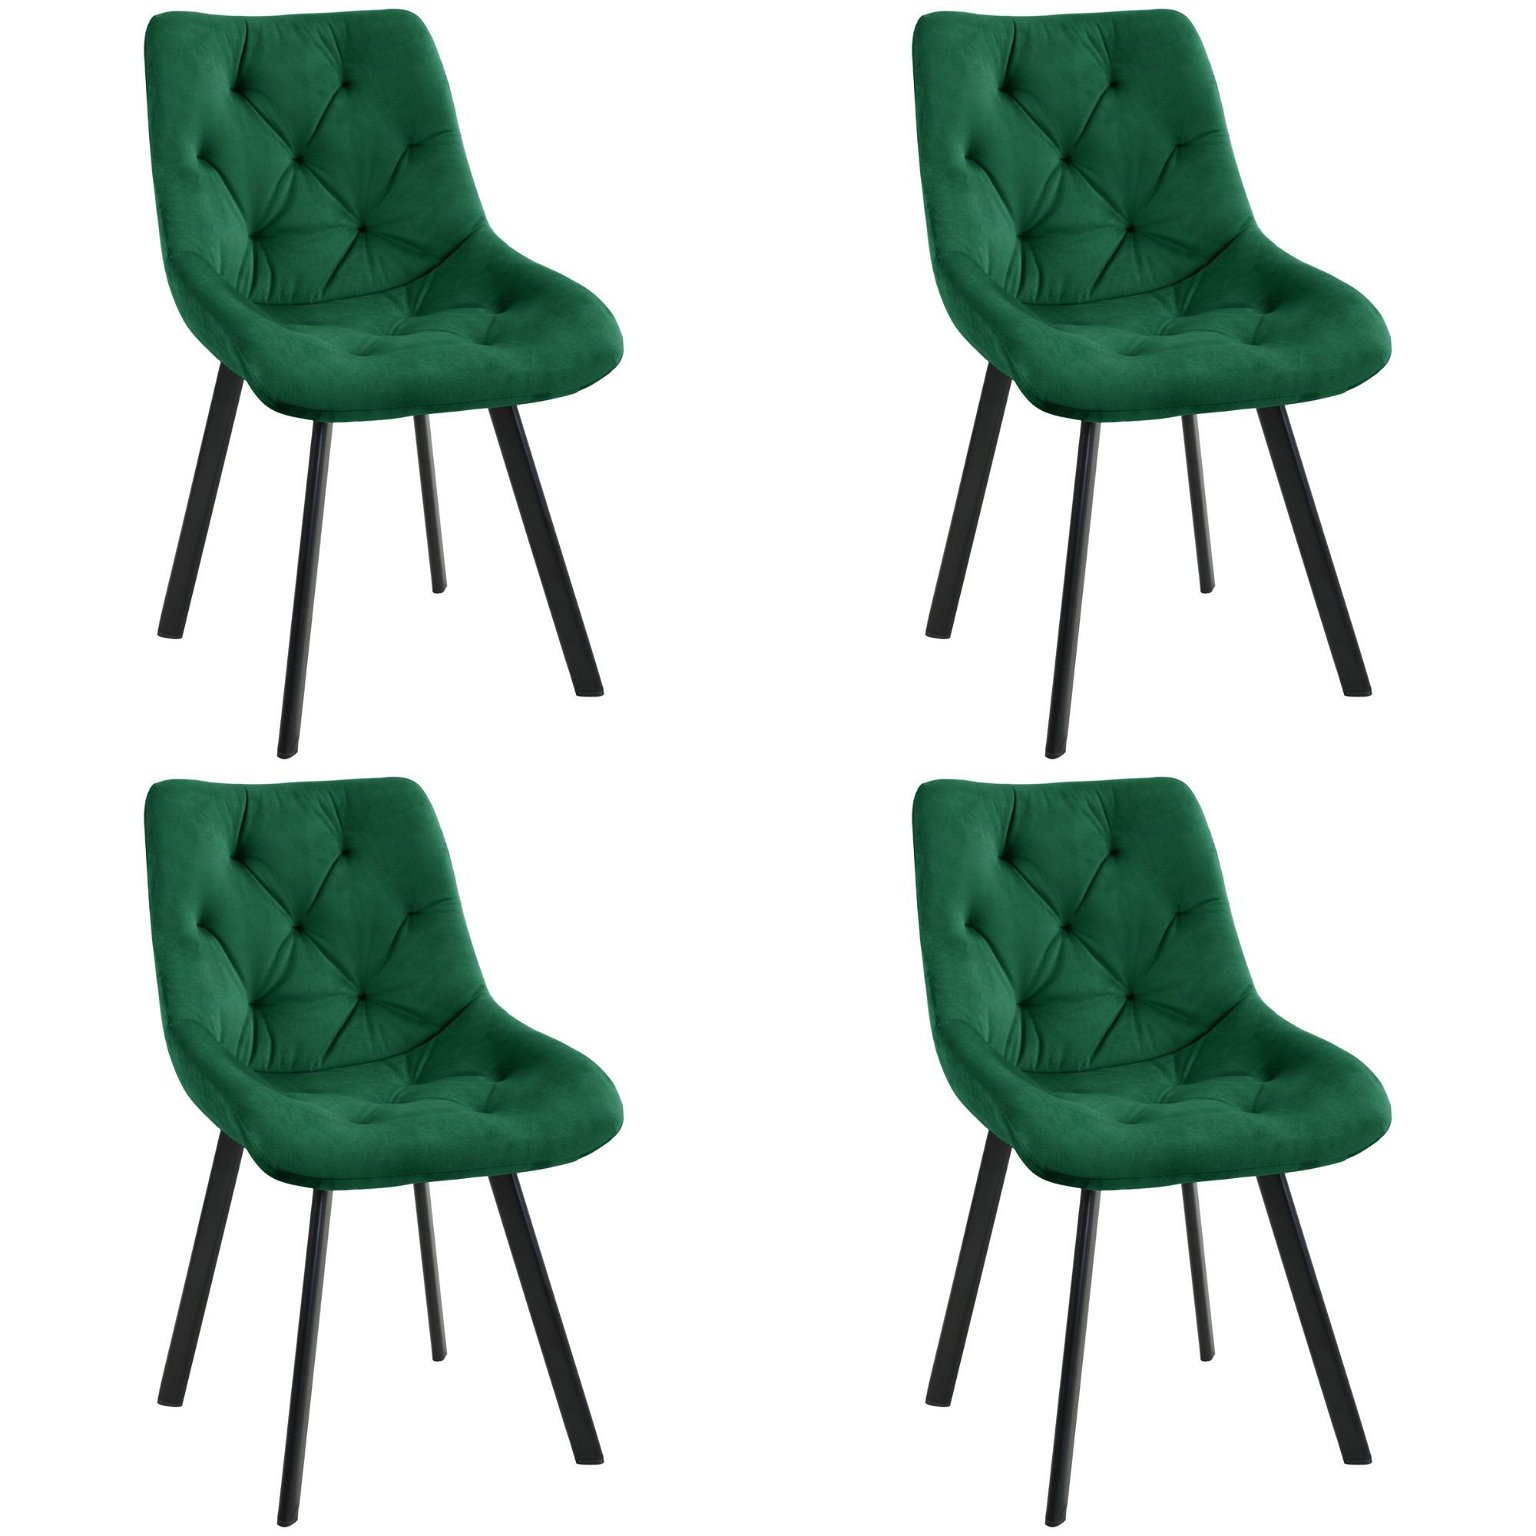 4-ių kėdžių komplektas SJ.33, žalia